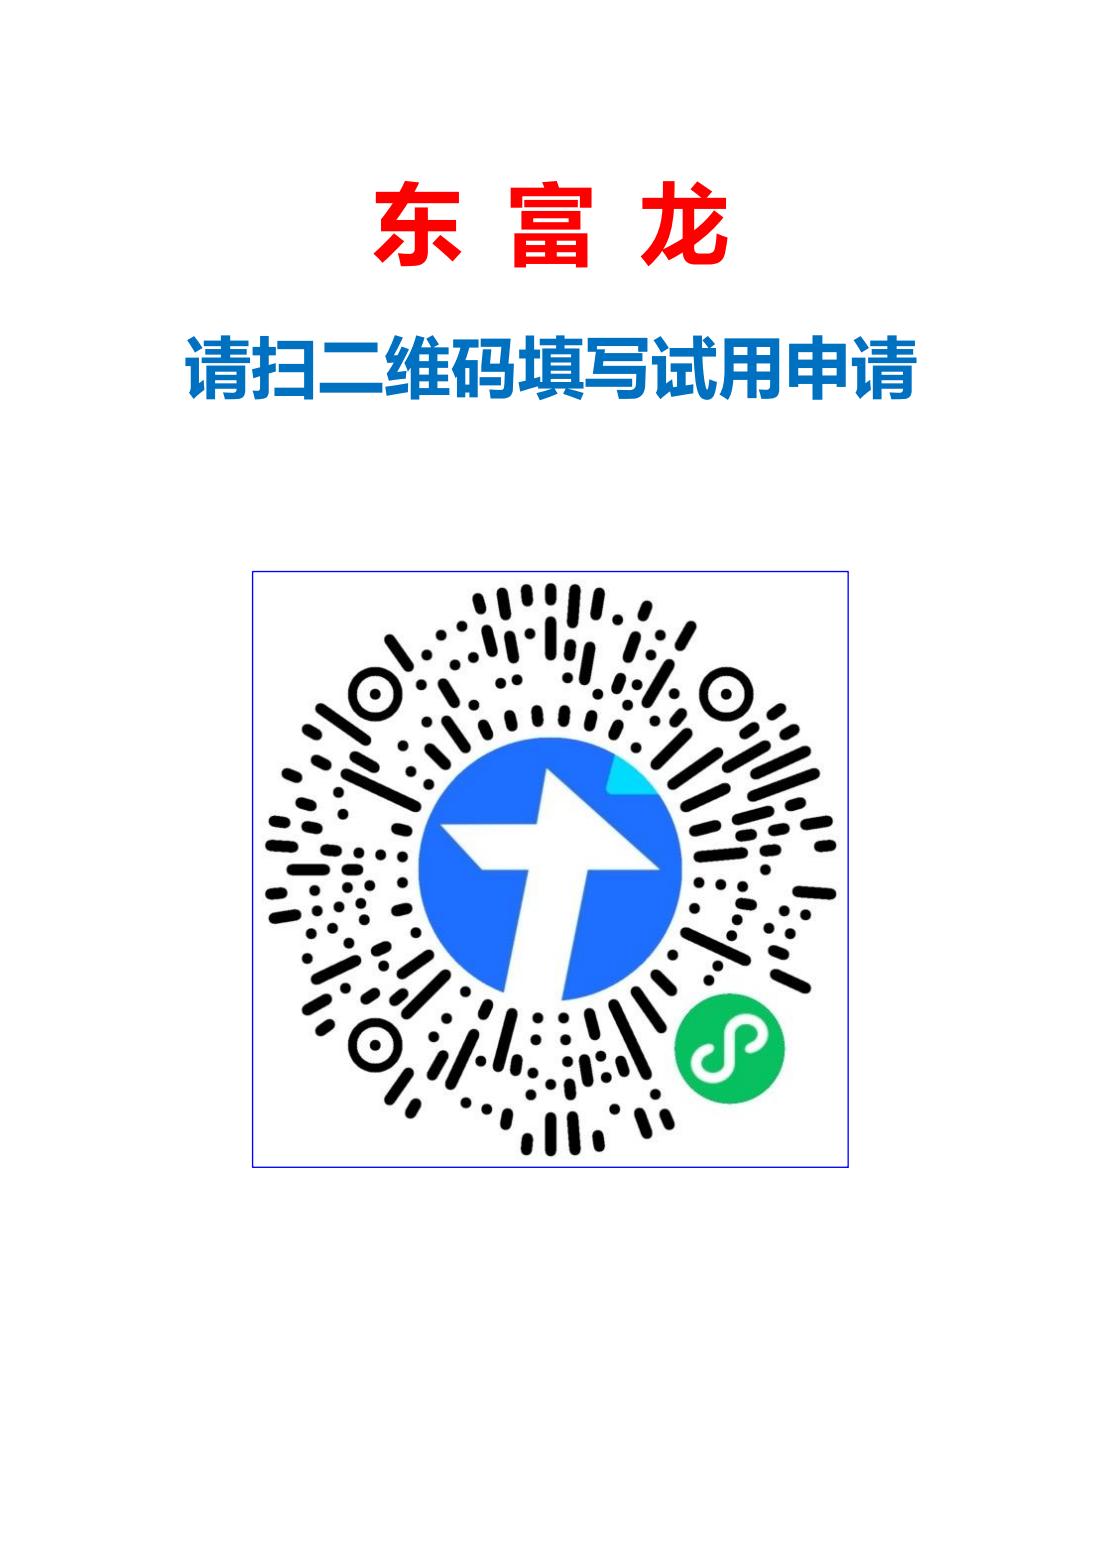 东富龙试用申请二维码_00.jpg